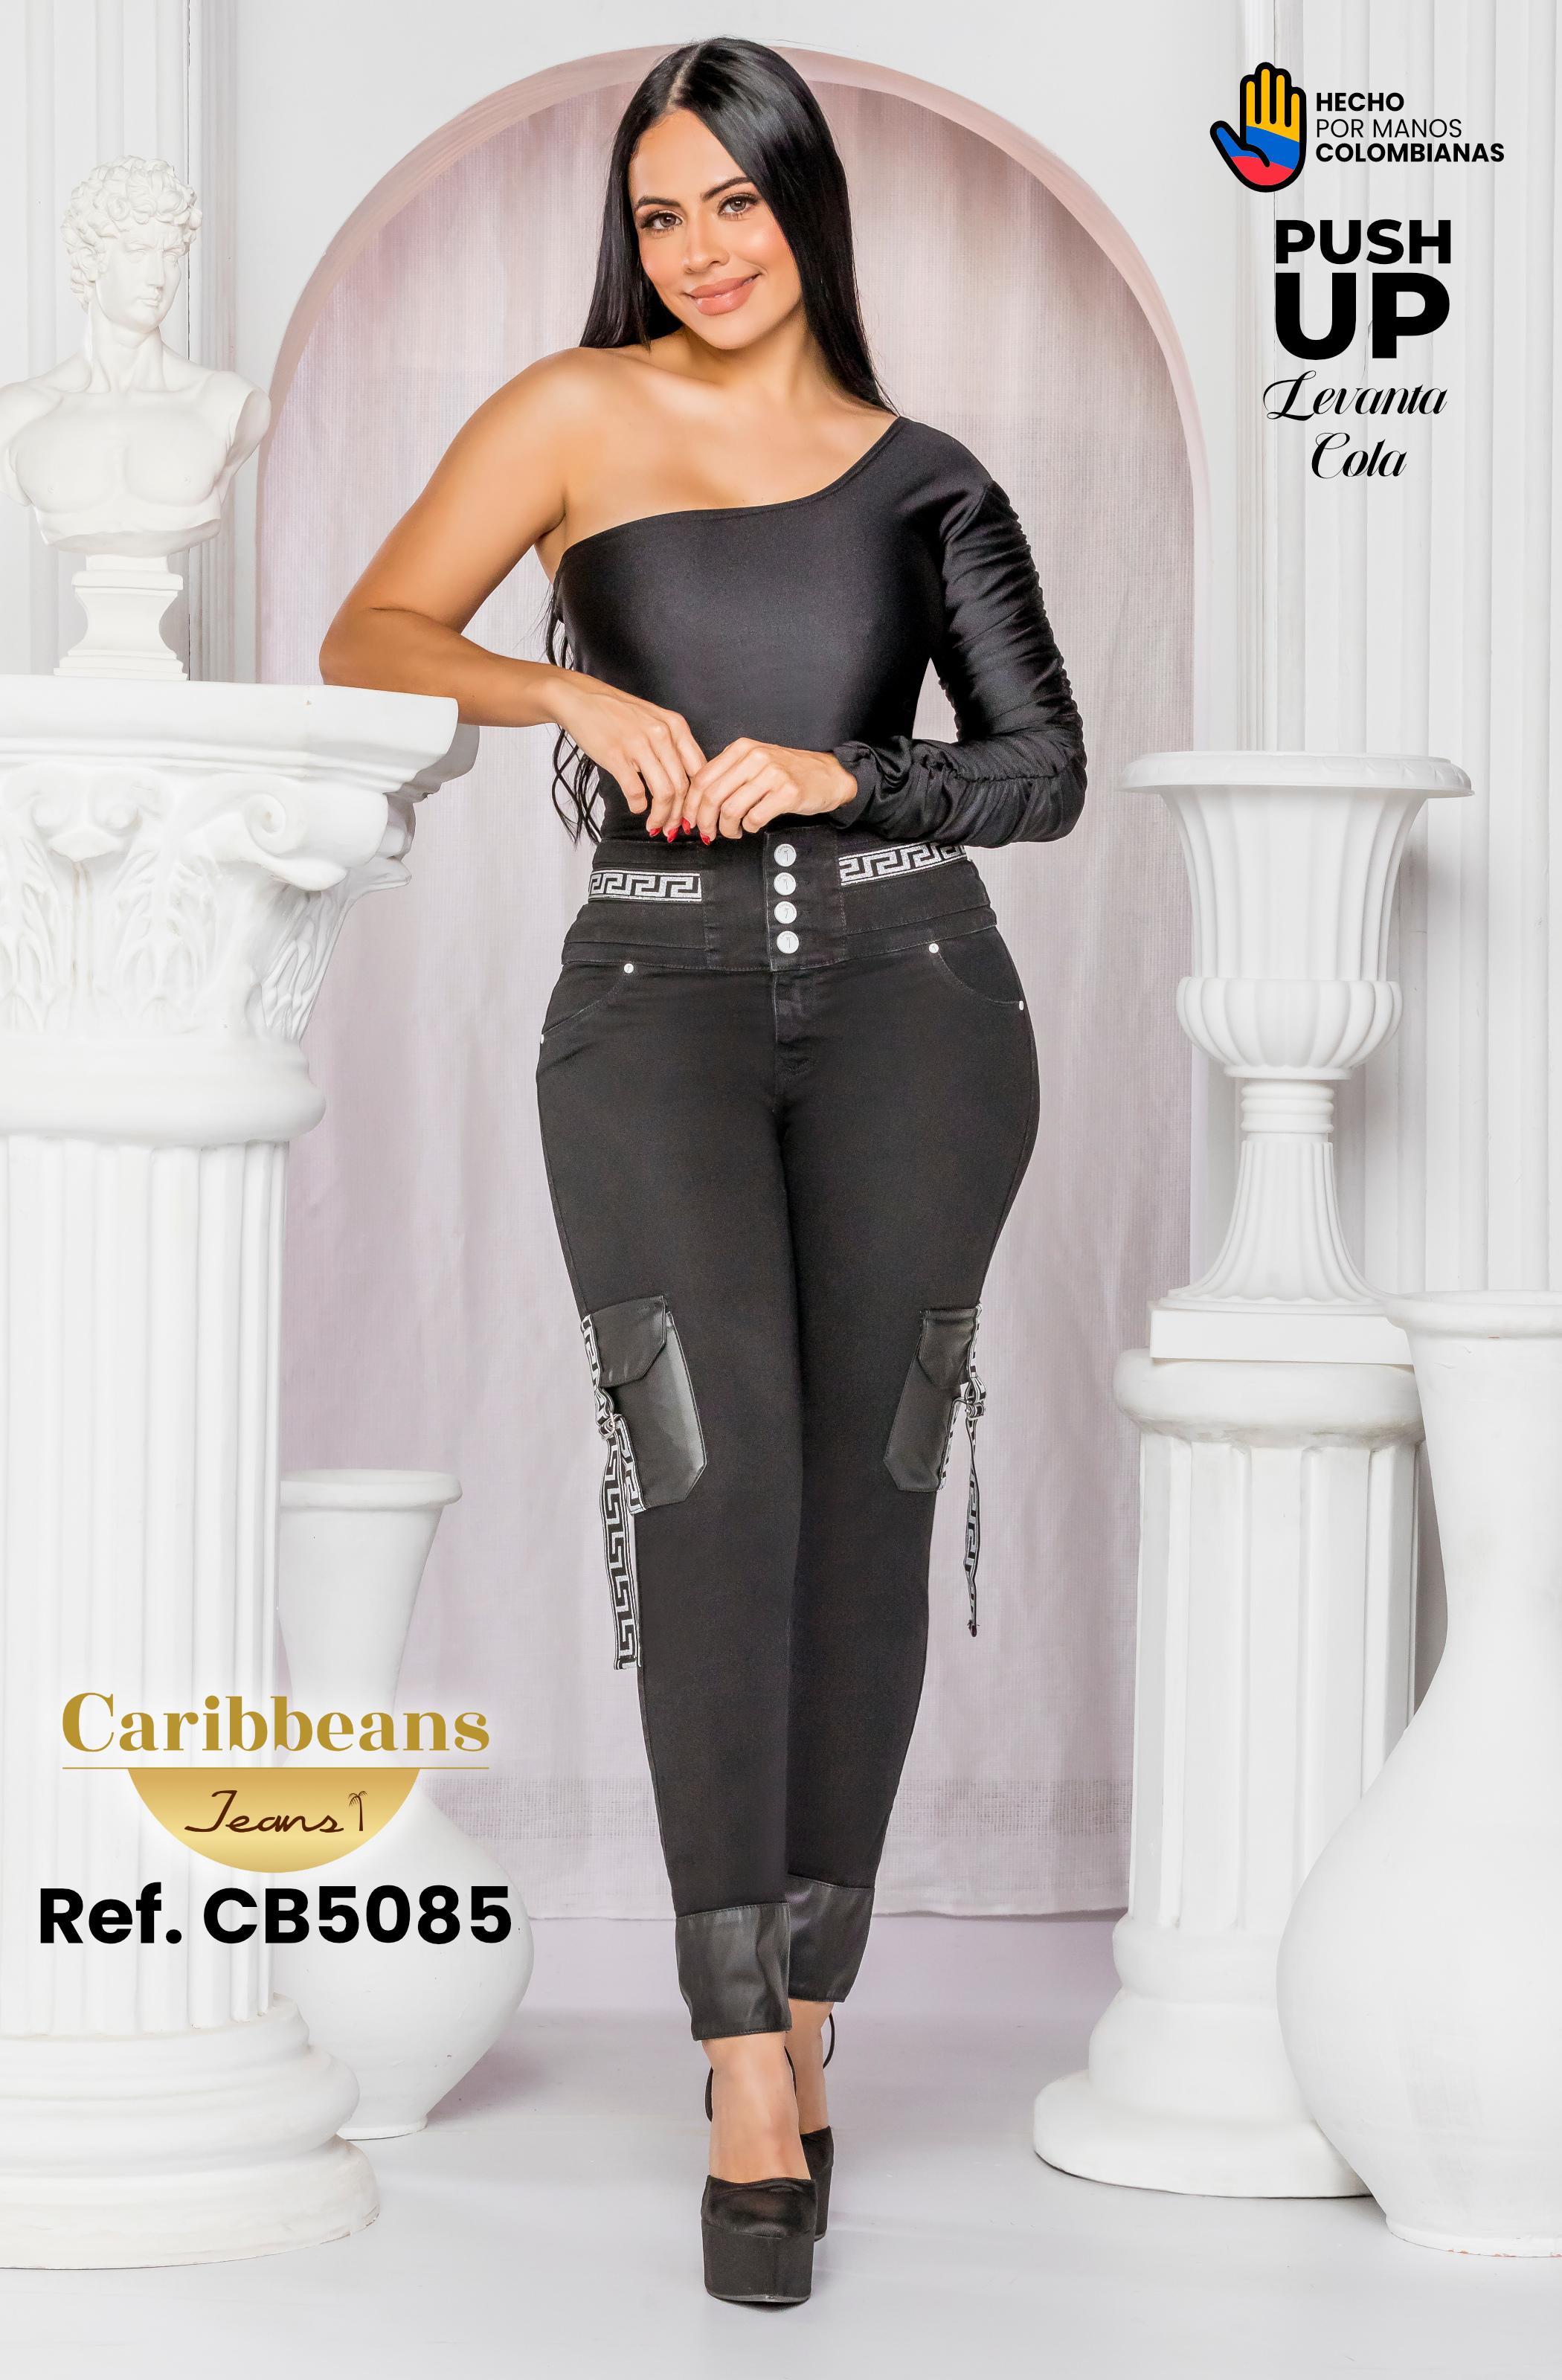 Pantalon Do Jeans levanta cola 74795 - Kprichos Moda Latina